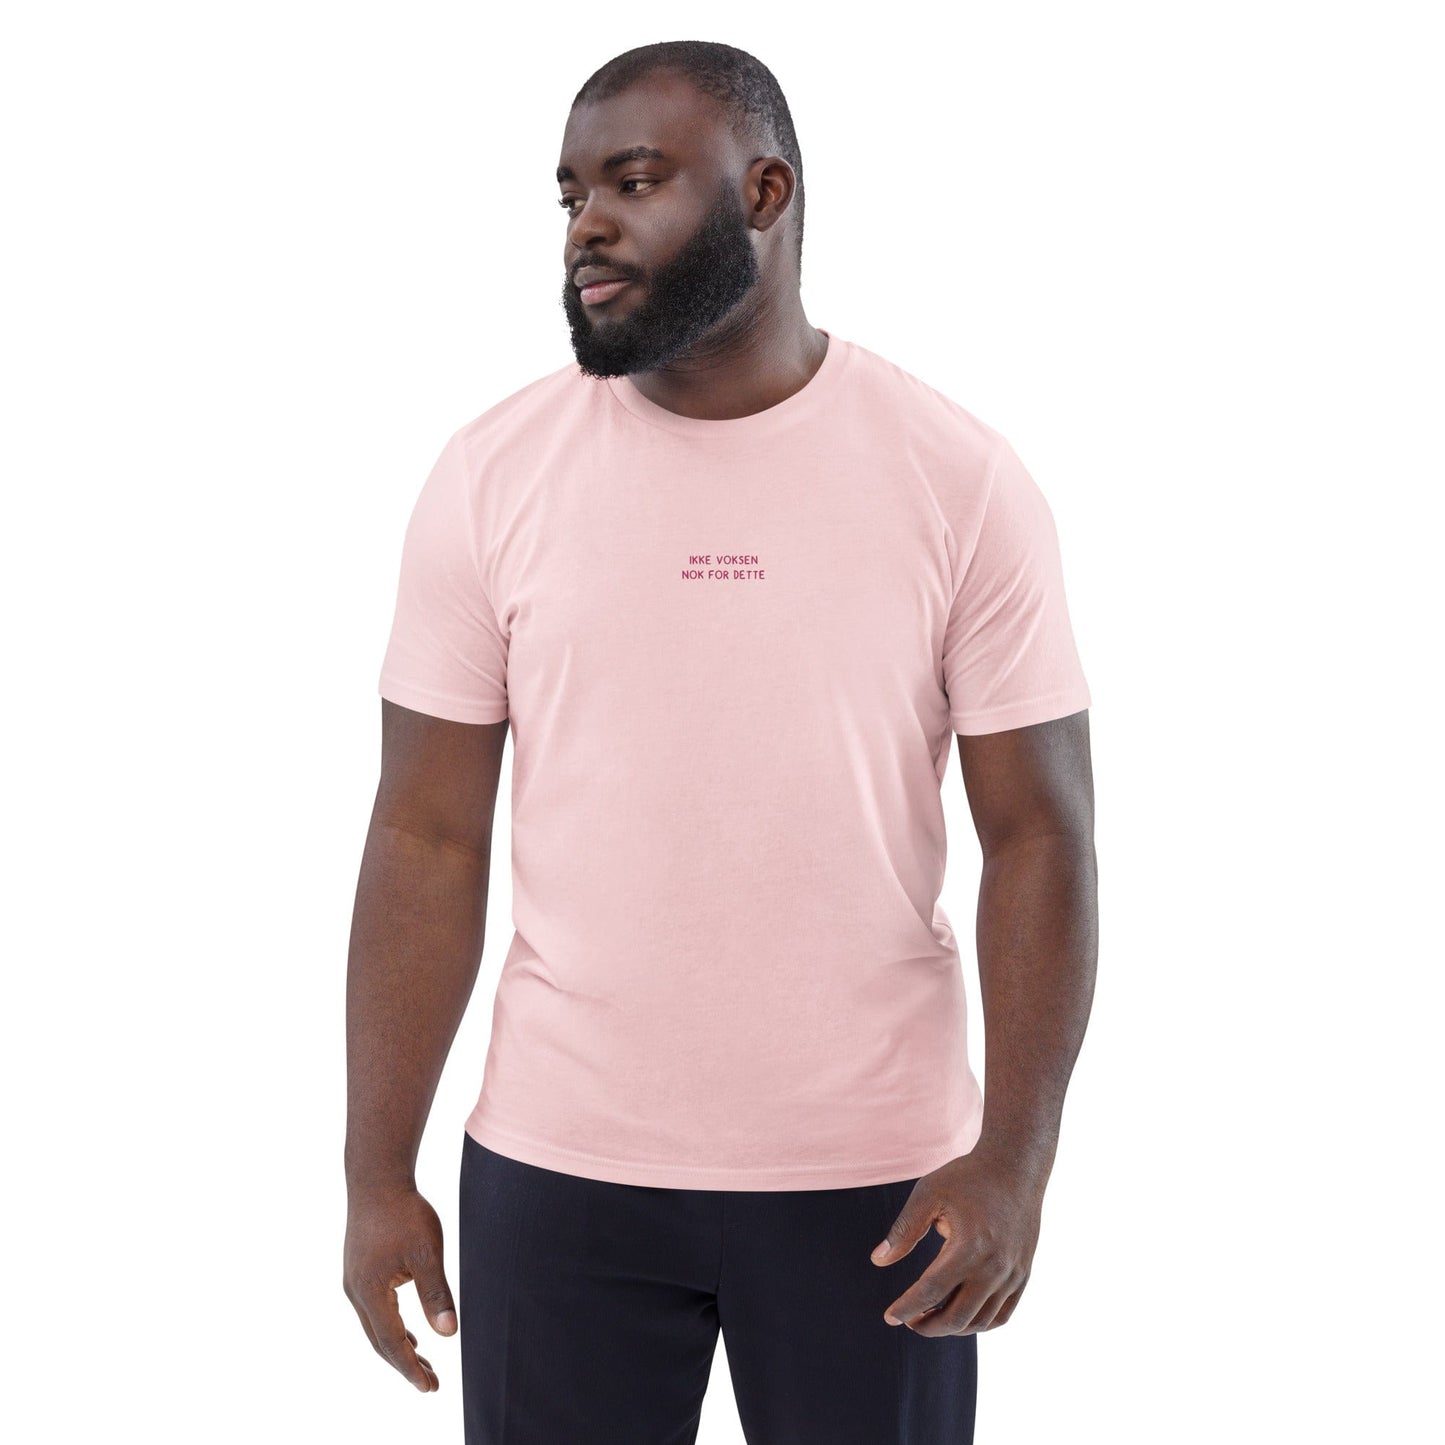 VAGPWR Ikke voksen - pink- Unisex eco t-shirt